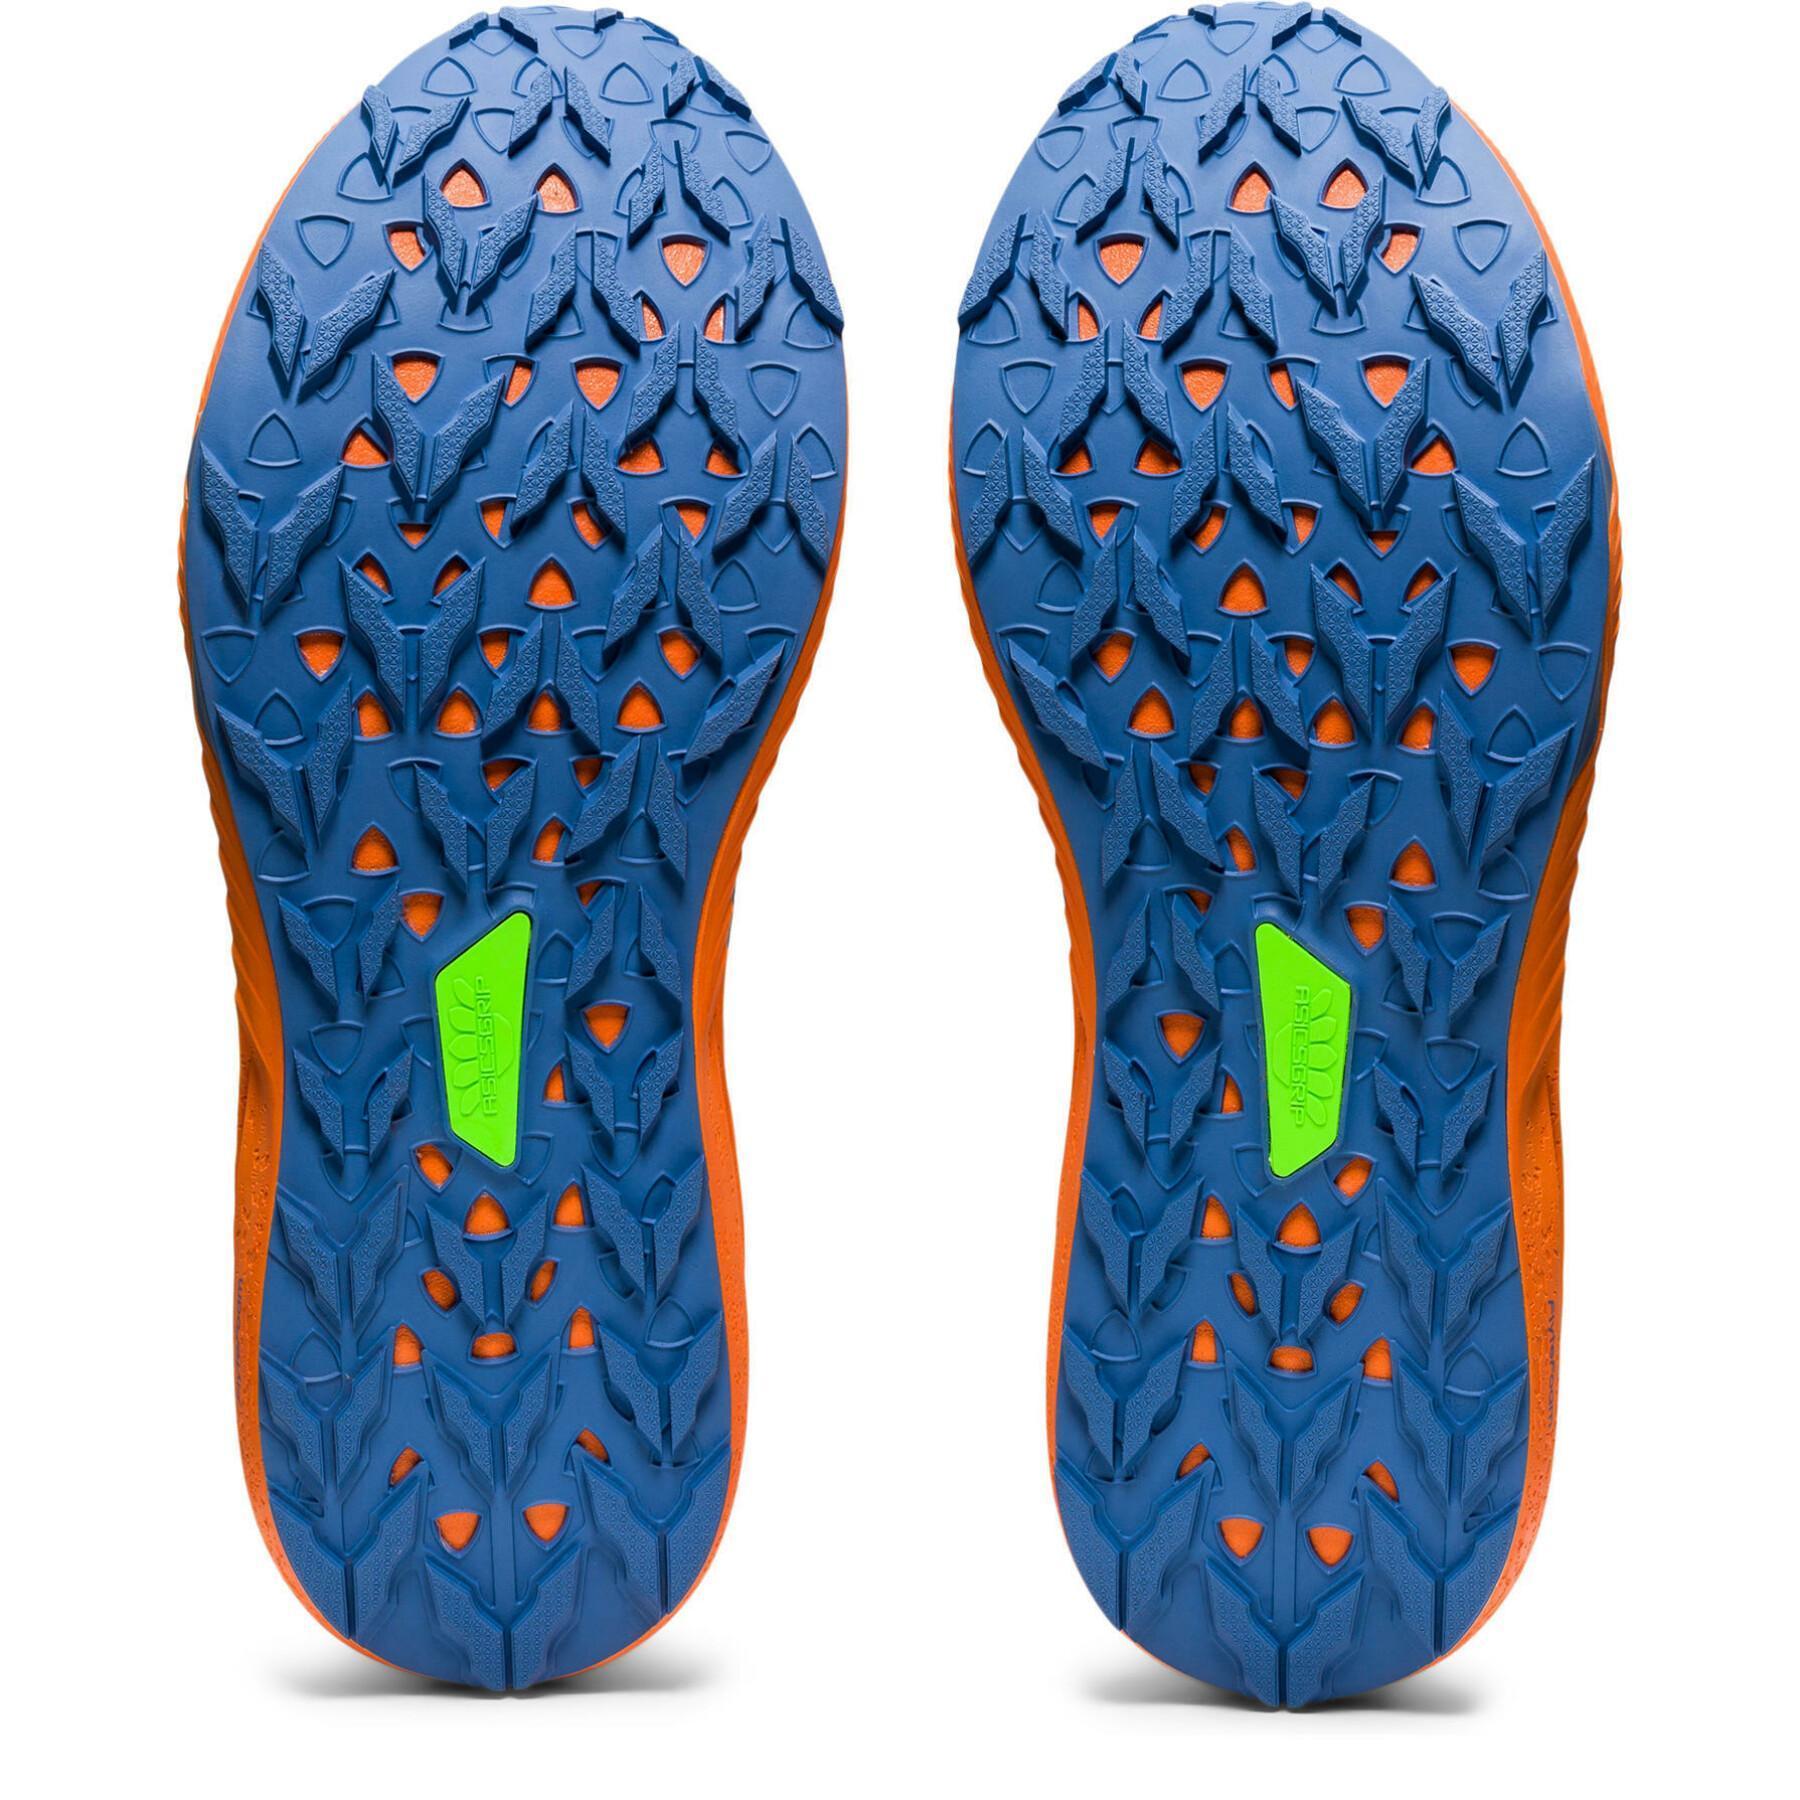 Trailrunning-Schuhe Asics Fuji Lite 2